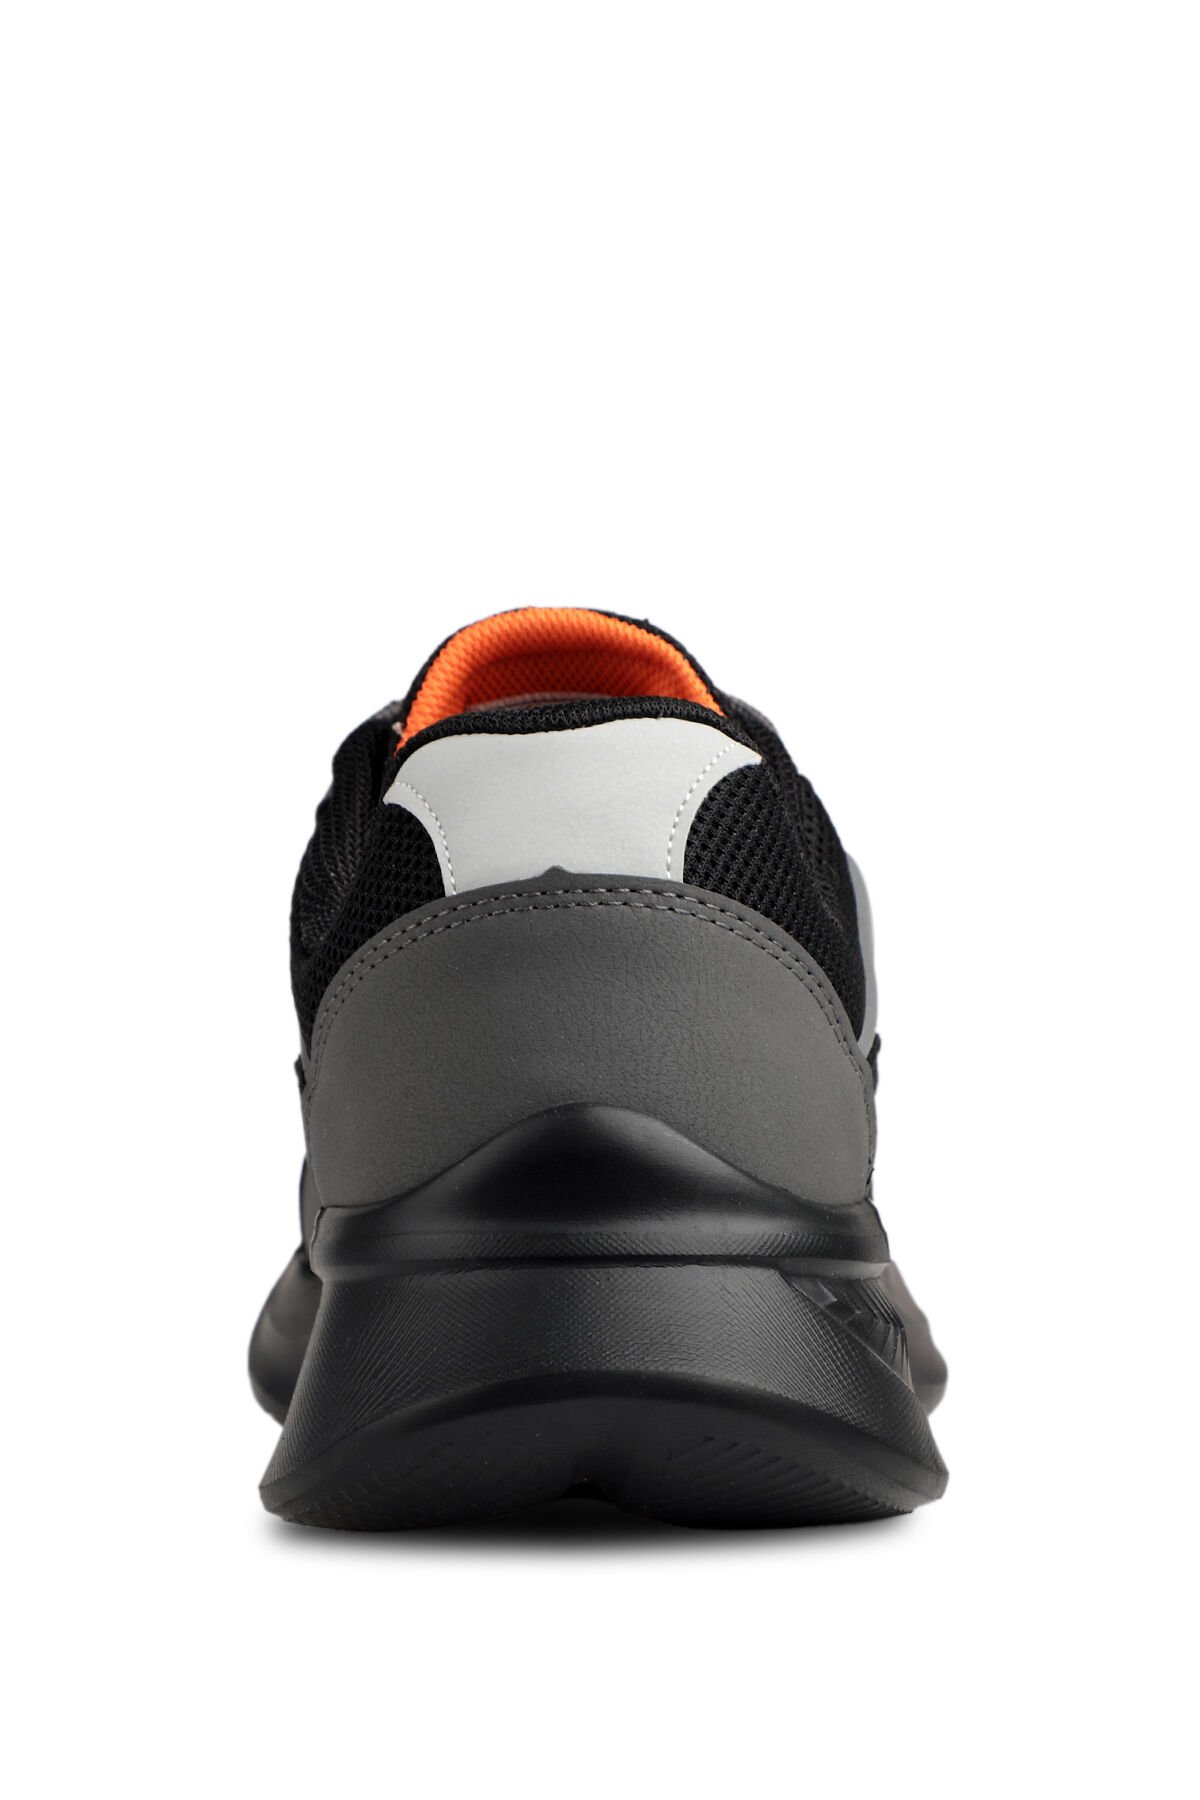 Slazenger ZODYAK I Sneaker Erkek Ayakkabı Siyah / Koyu Gri - Thumbnail